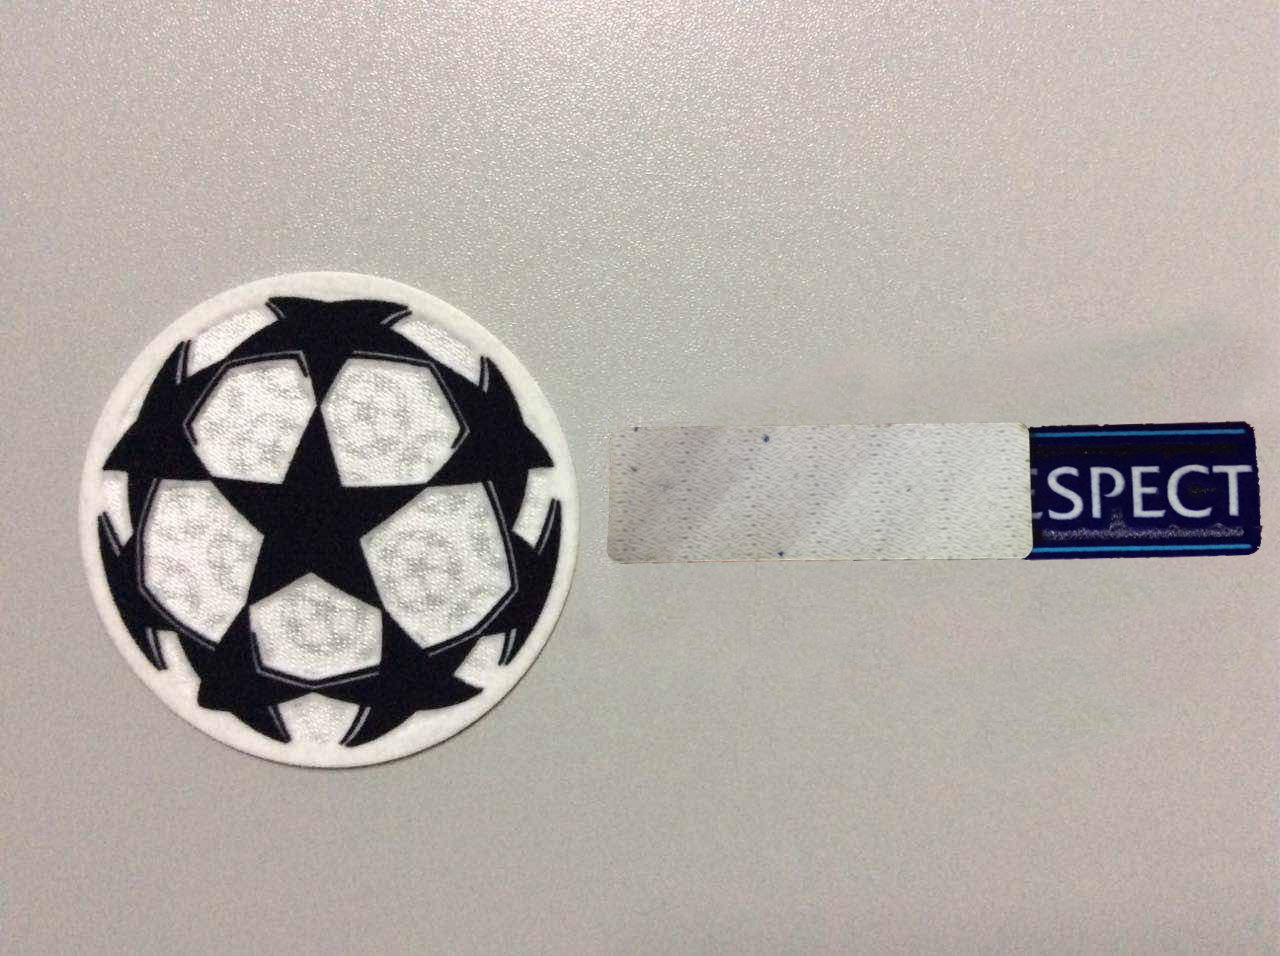 Nueva pelota de campeones + parche de respeto fútbol Parches de impresión insignias, patrón de estampado en caliente de fútbol